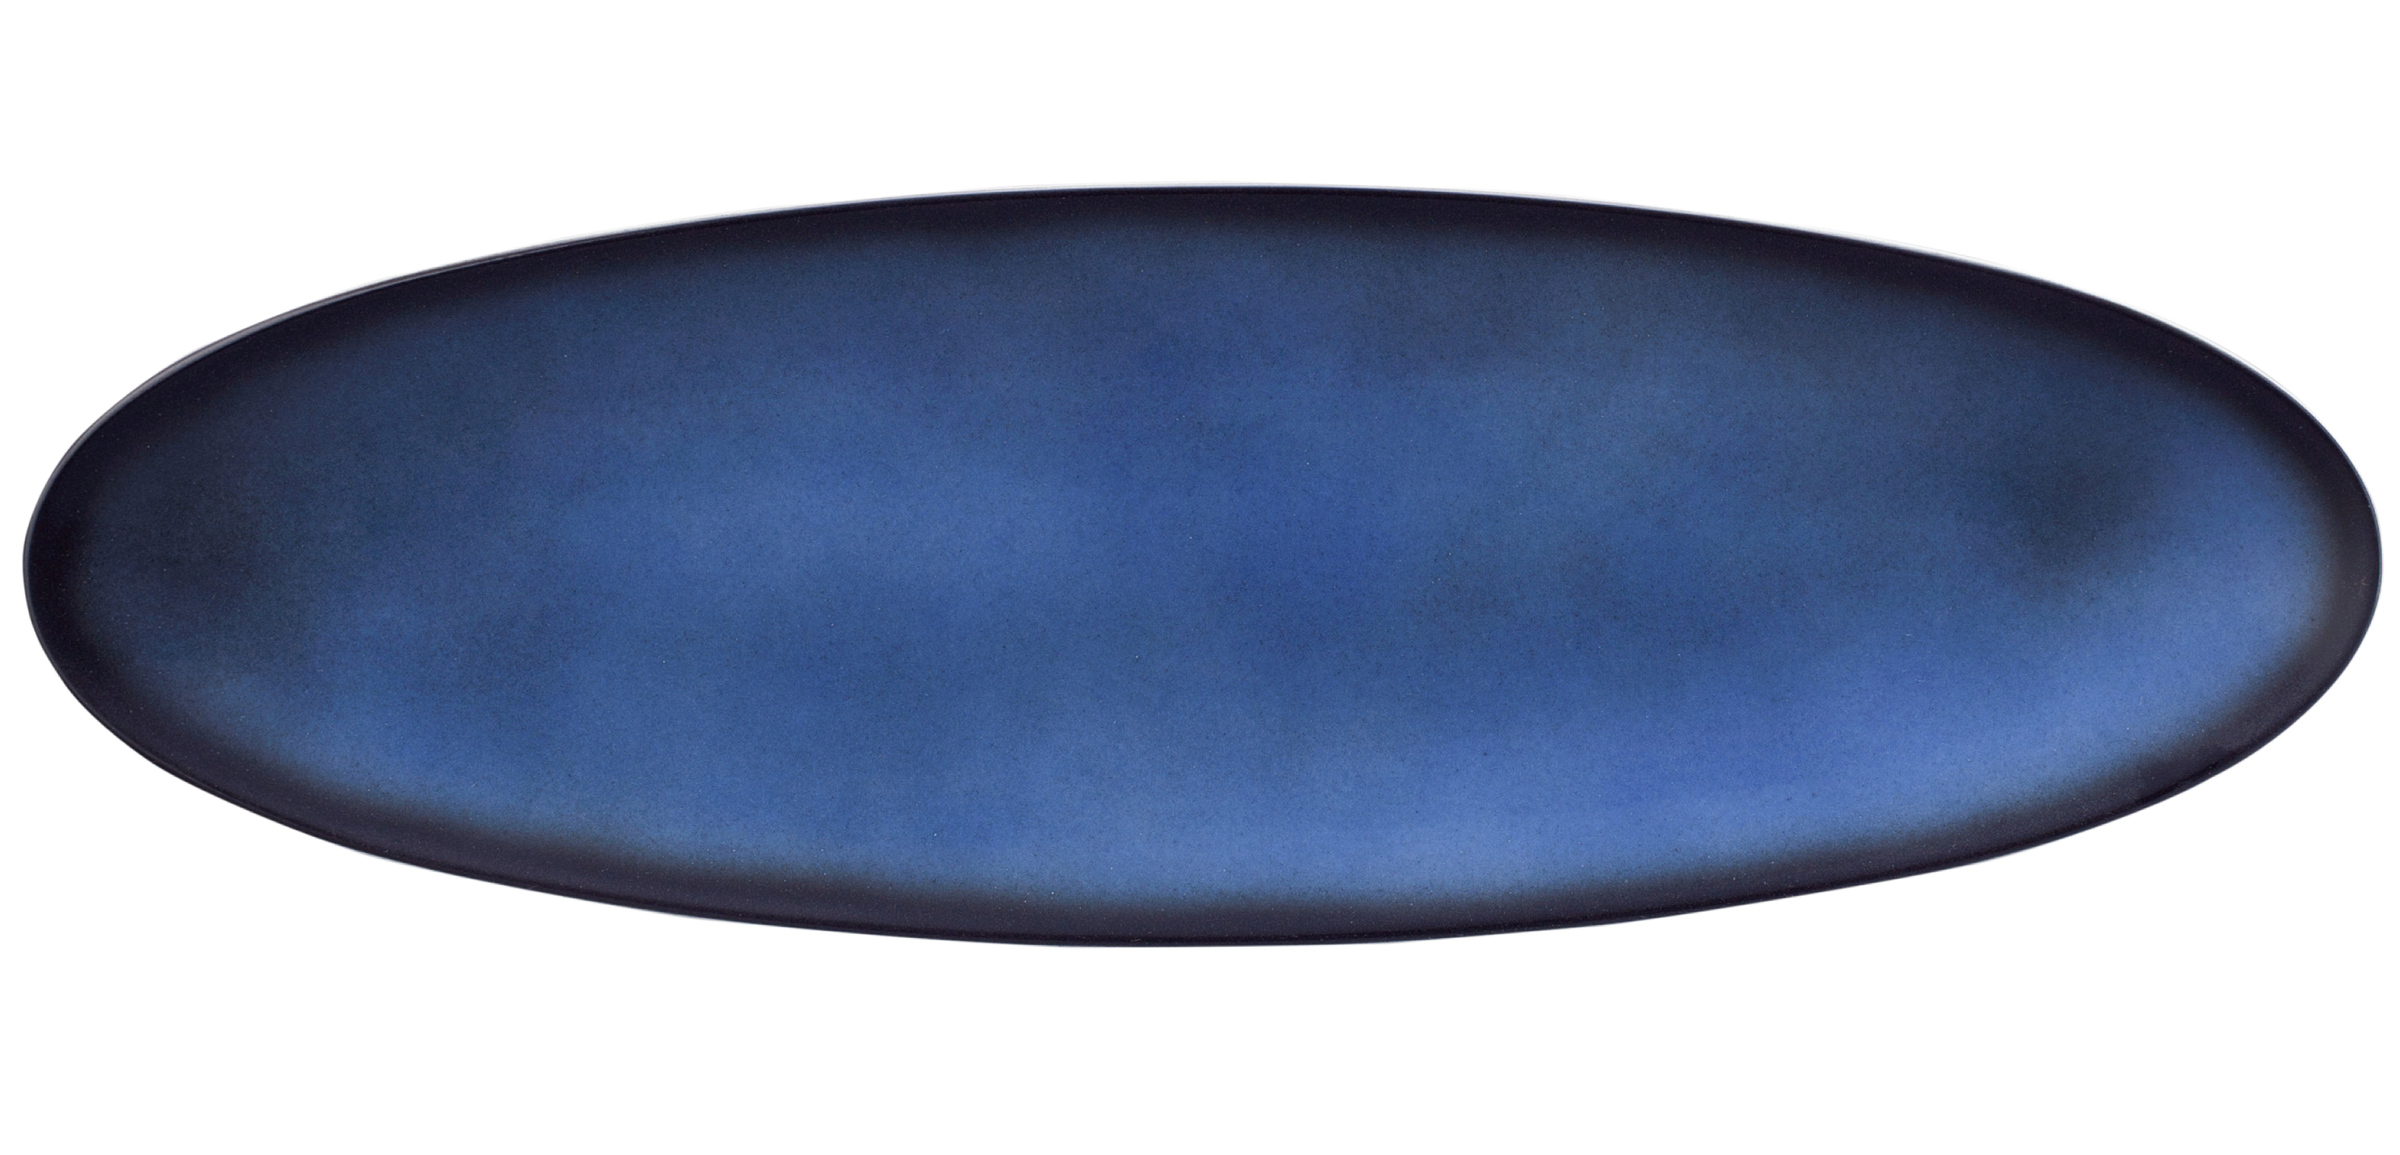 Platte C 44x14cm M5379 COUP FINE DINING FANTASTIC blau